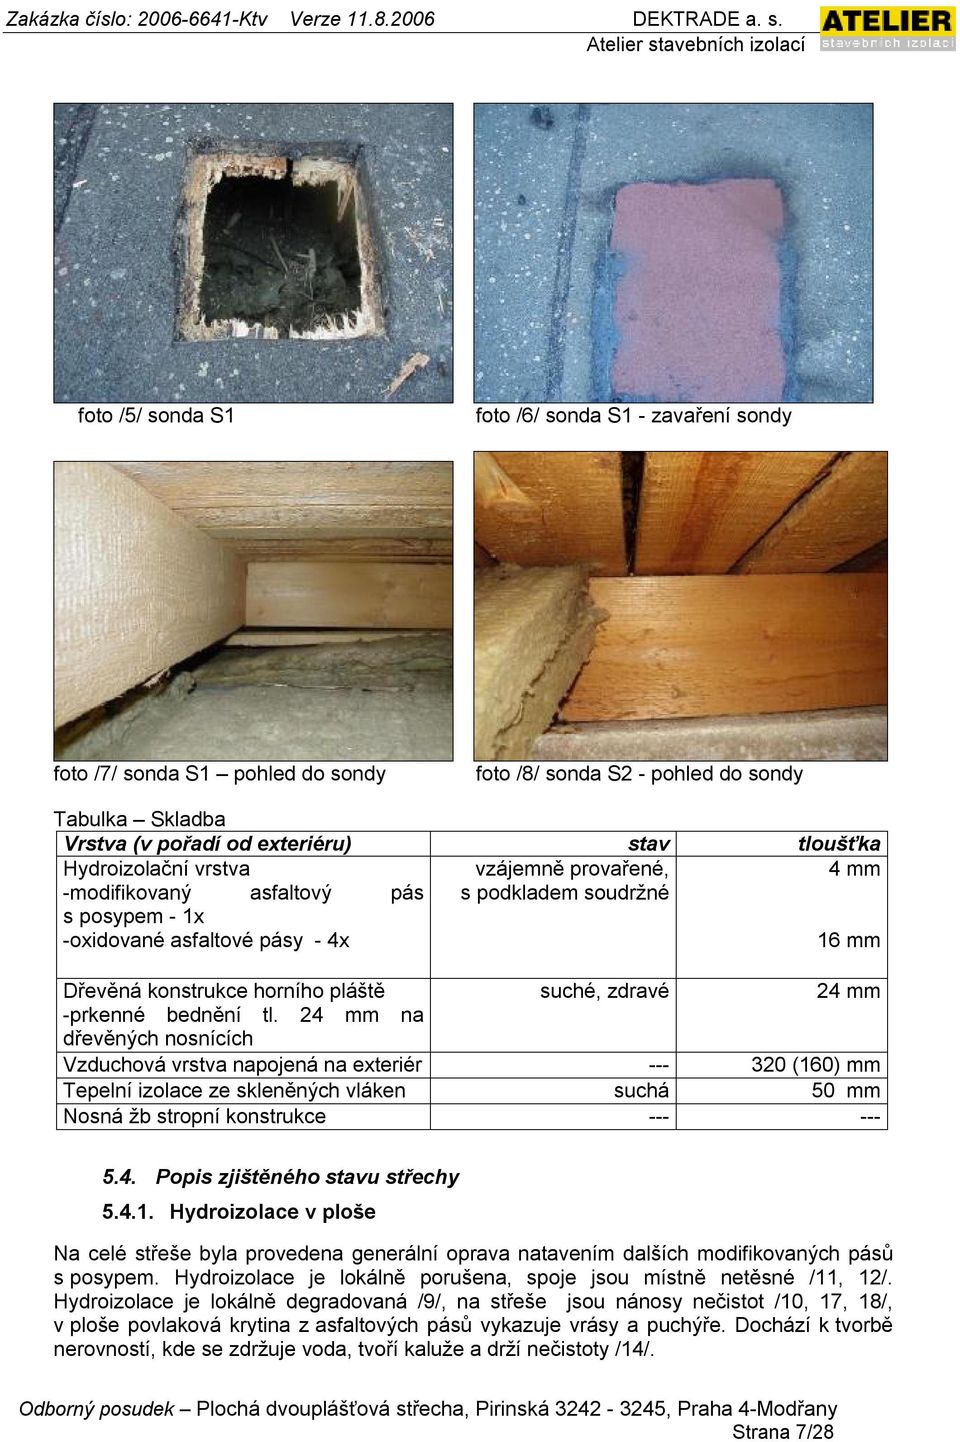 bednění tl. 24 mm na dřevěných nosnících Vzduchová vrstva napojená na exteriér --- 320 (160) mm Tepelní izolace ze skleněných vláken suchá 50 mm Nosná žb stropní konstrukce --- --- 5.4. Popis zjištěného stavu střechy 5.